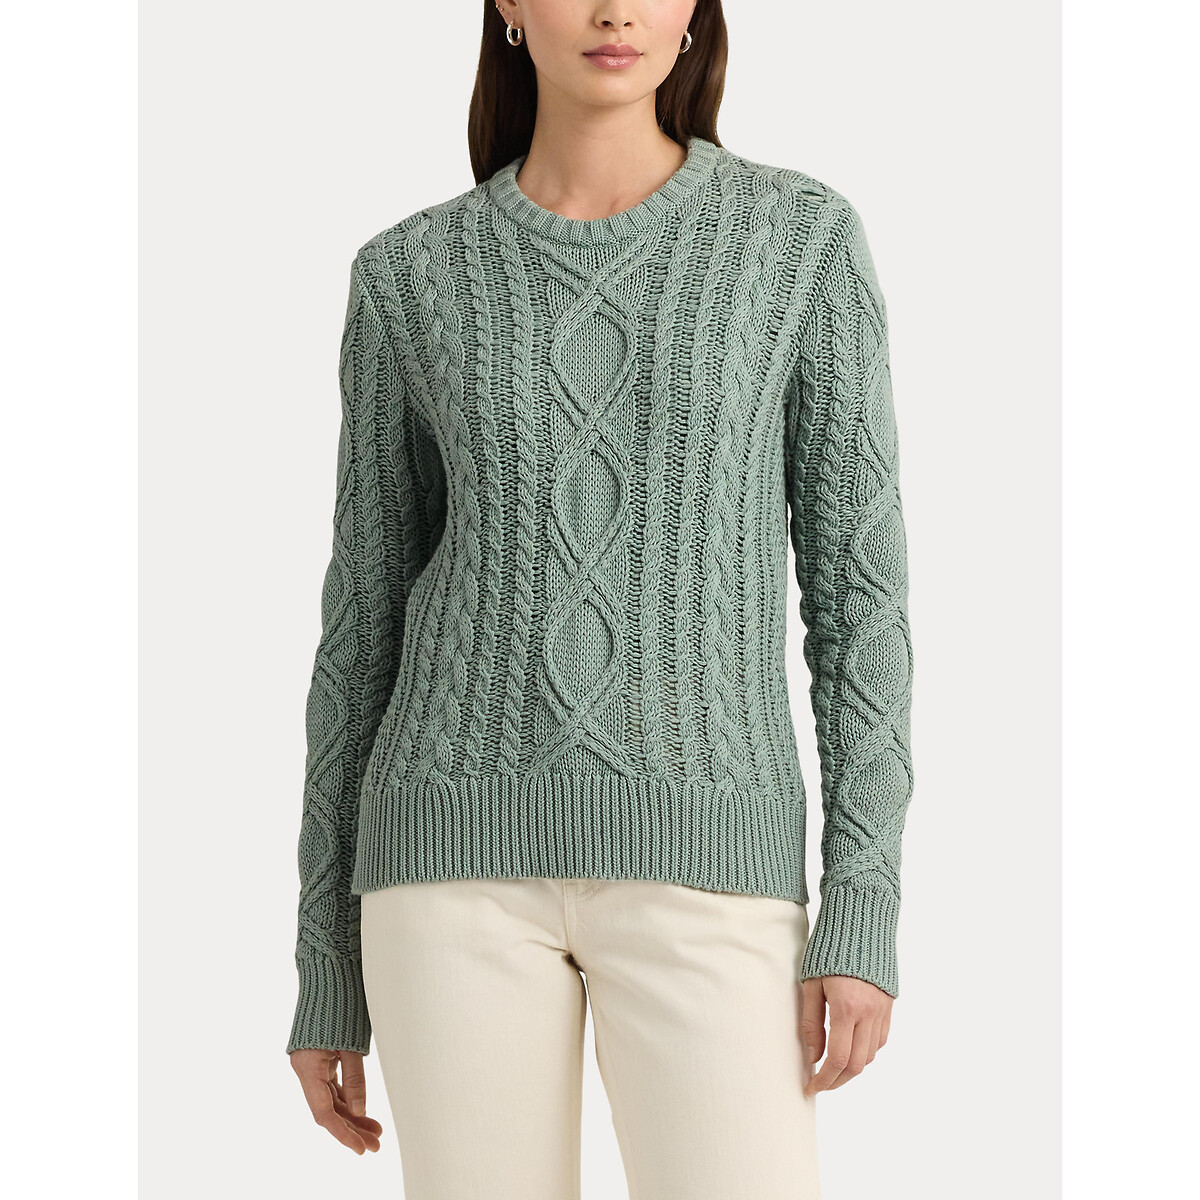 Пуловер с витым узором и круглым вырезом из хлопкового трикотажа HILVAITE XL зеленый пуловер трикотажный с витым узором и воротником с отворотом s бежевый